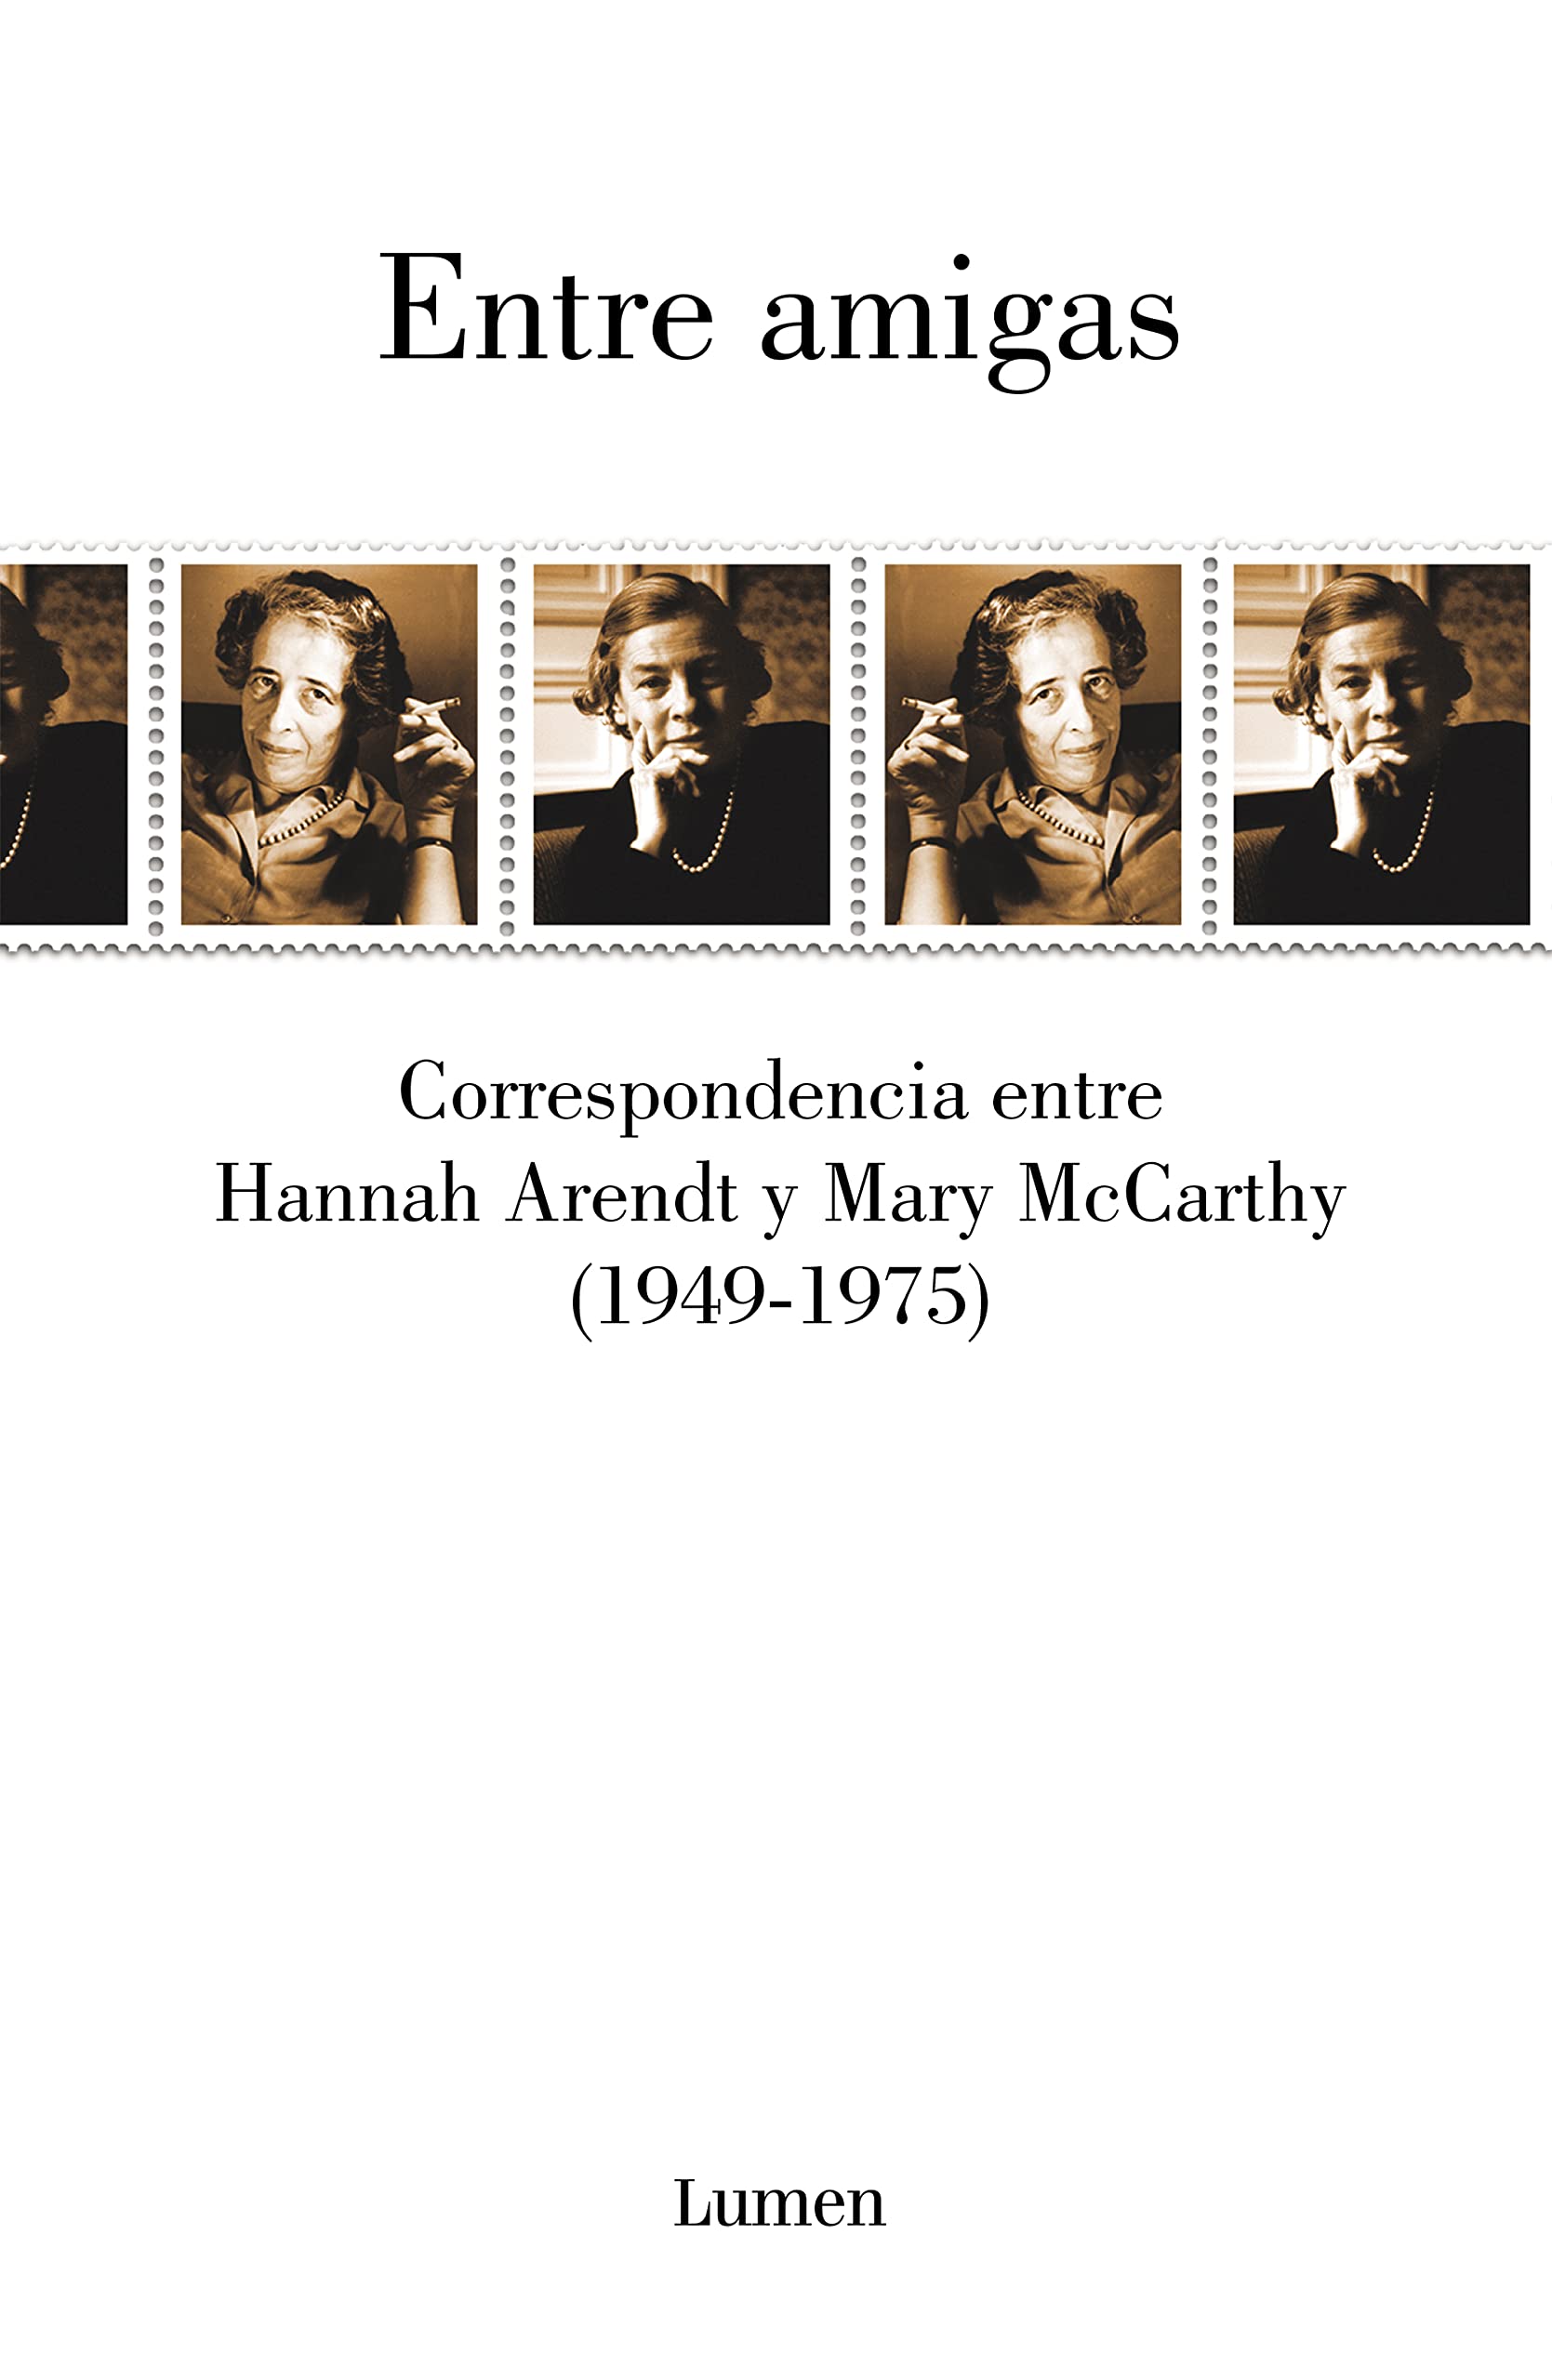 Zenda recomienda: Entre amigas, de Hannah Arendt y Mary McCarthy